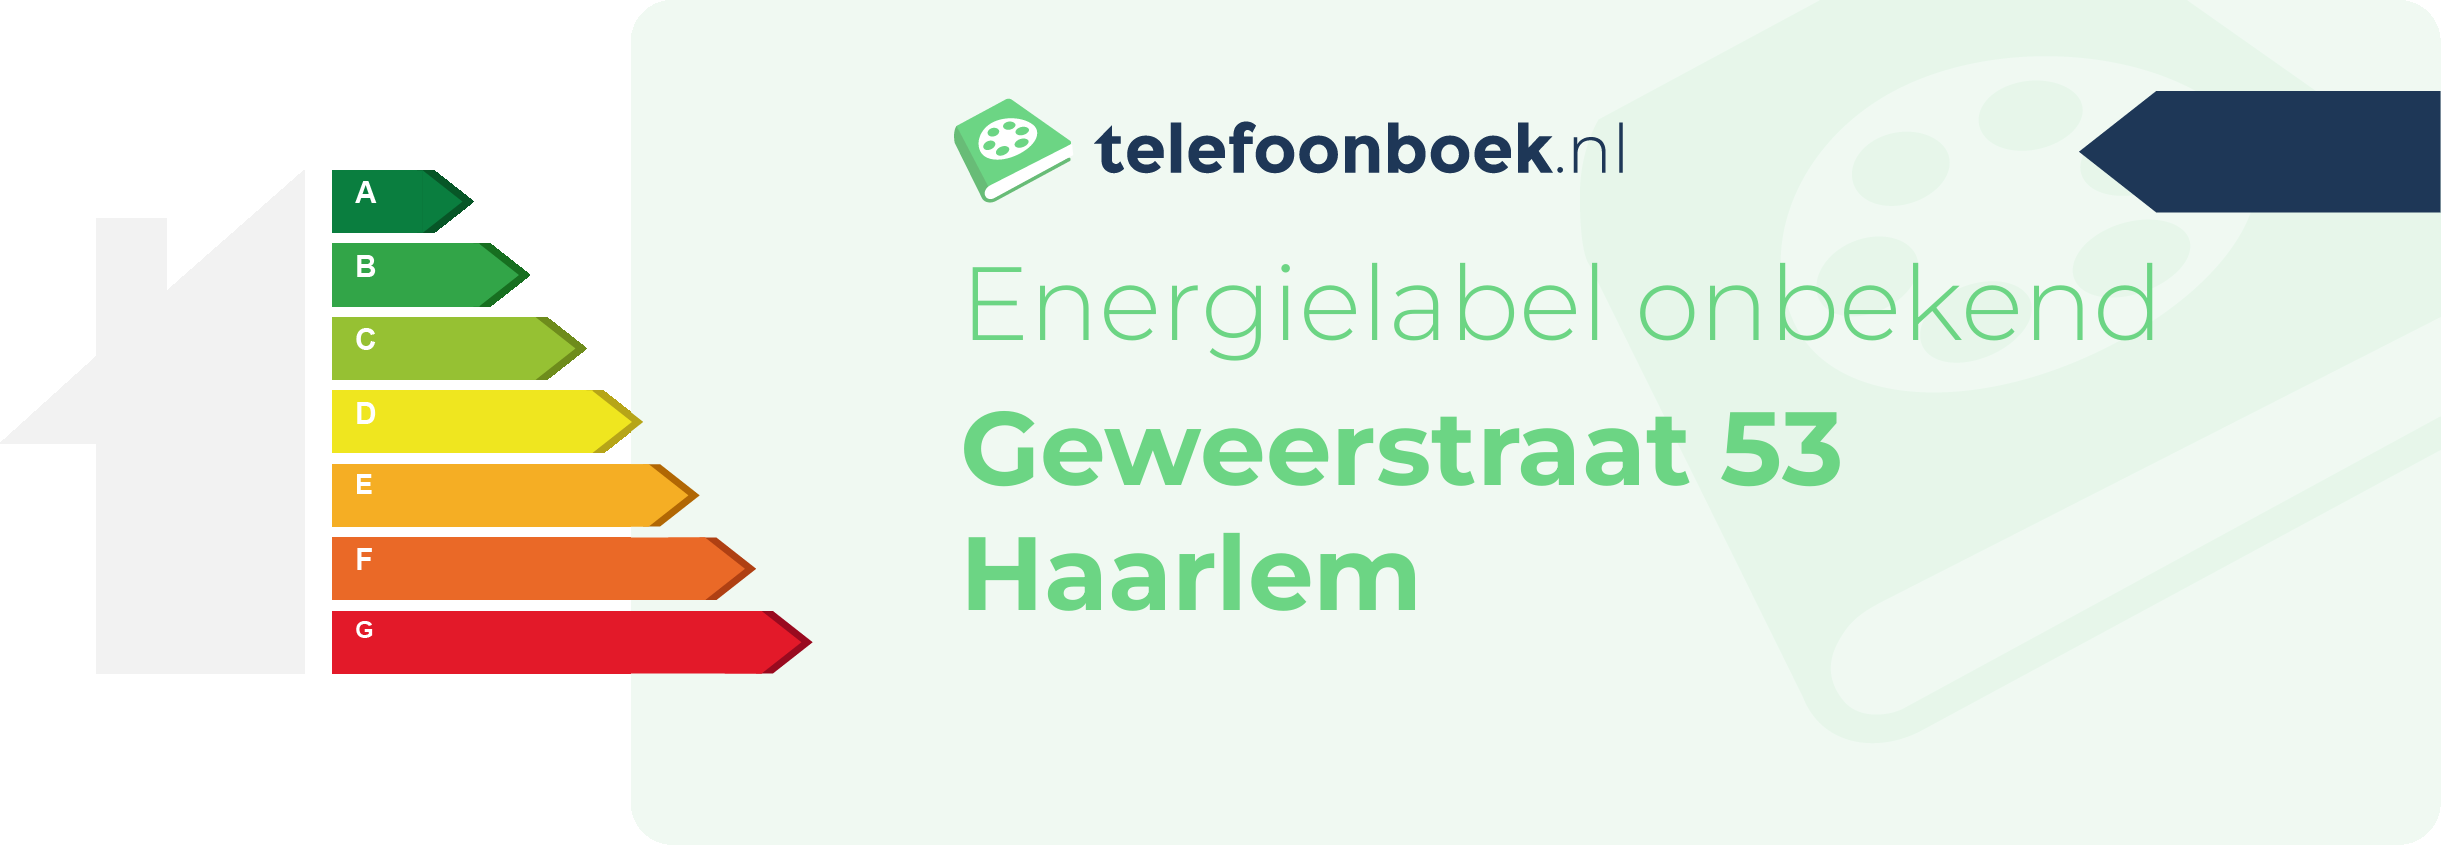 Energielabel Geweerstraat 53 Haarlem